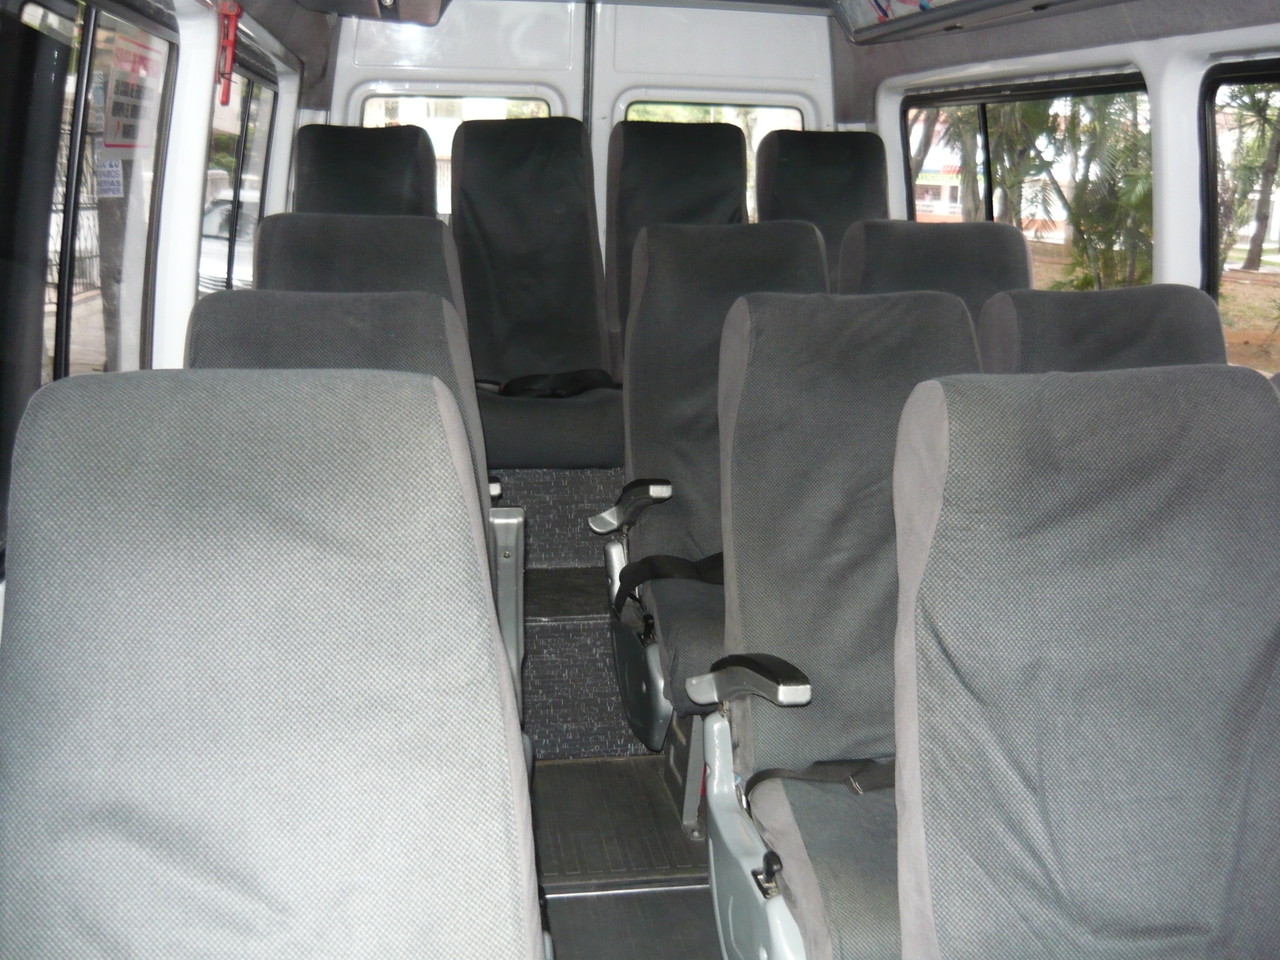 Interior Microbus No.69